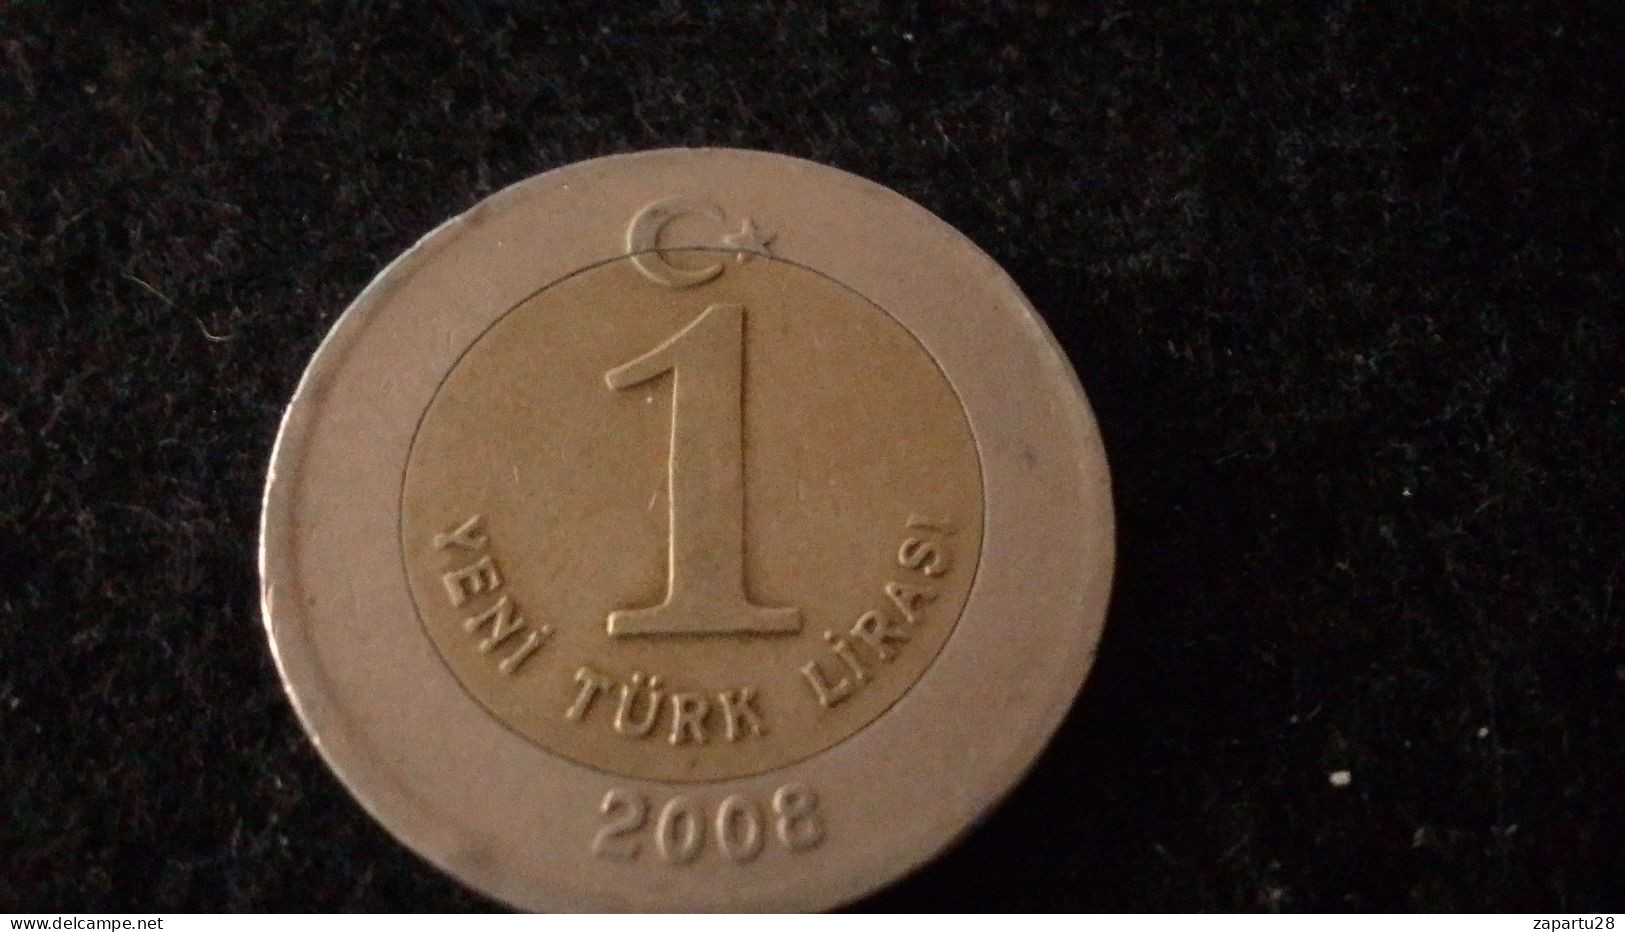 TÜRKİYE - 2008 - 1 YENİ TÜEK LİRASI - Turkije